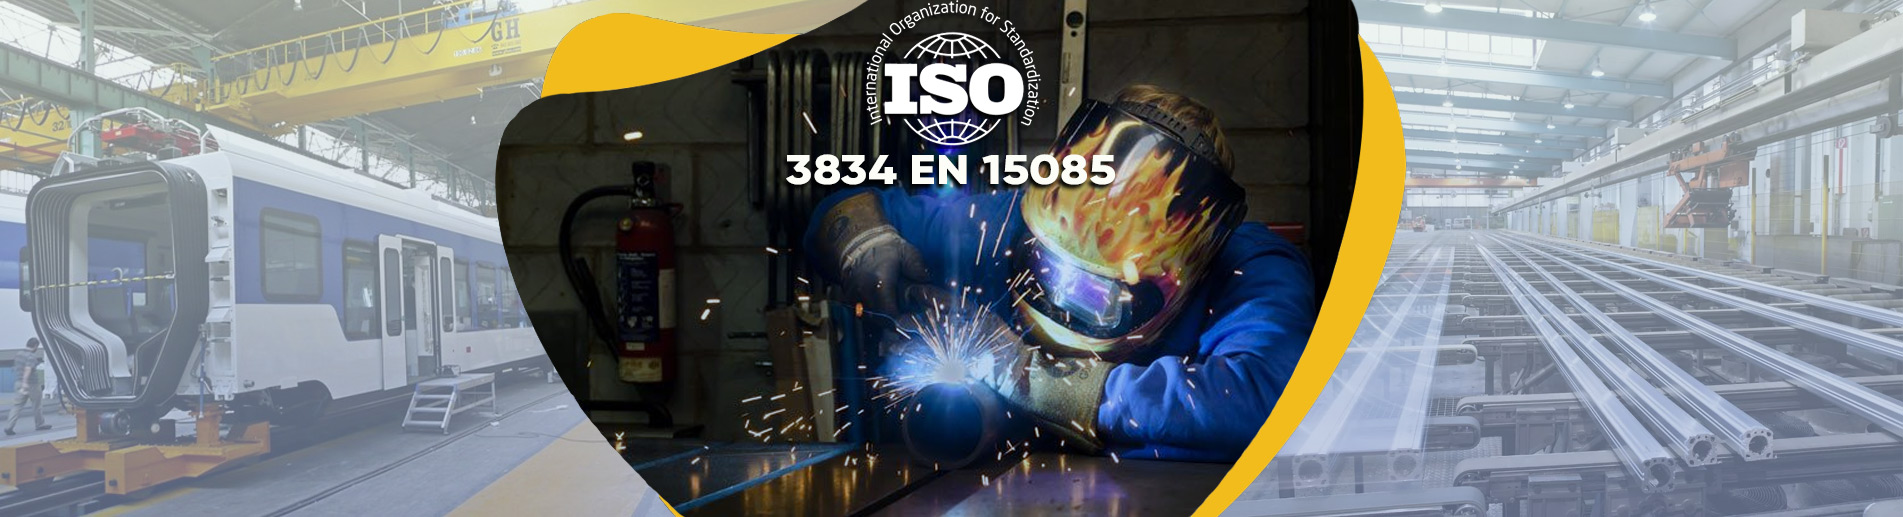 ISO 3834 EN 15085 Kaynaklı İmalat Yeterlilik